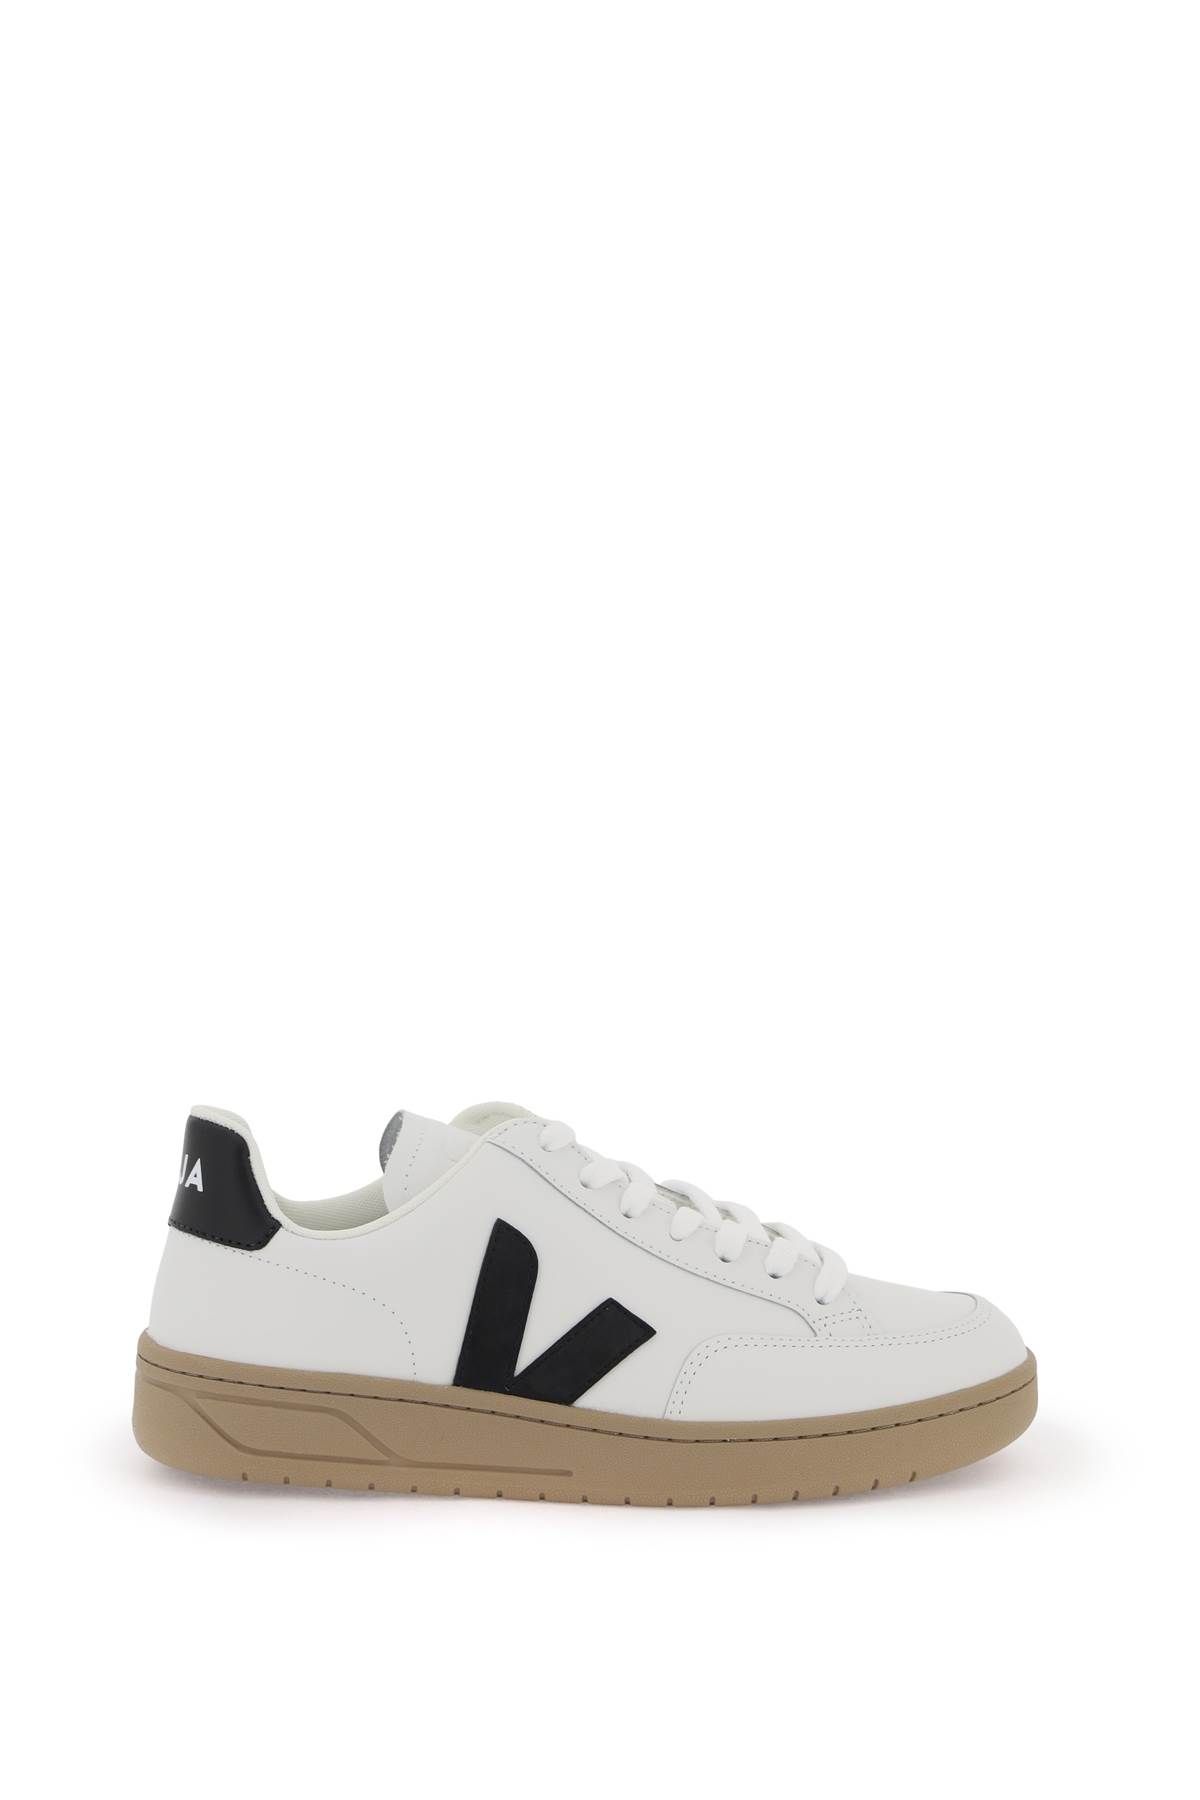 Shop Veja Leather V-12 Sneakers In White